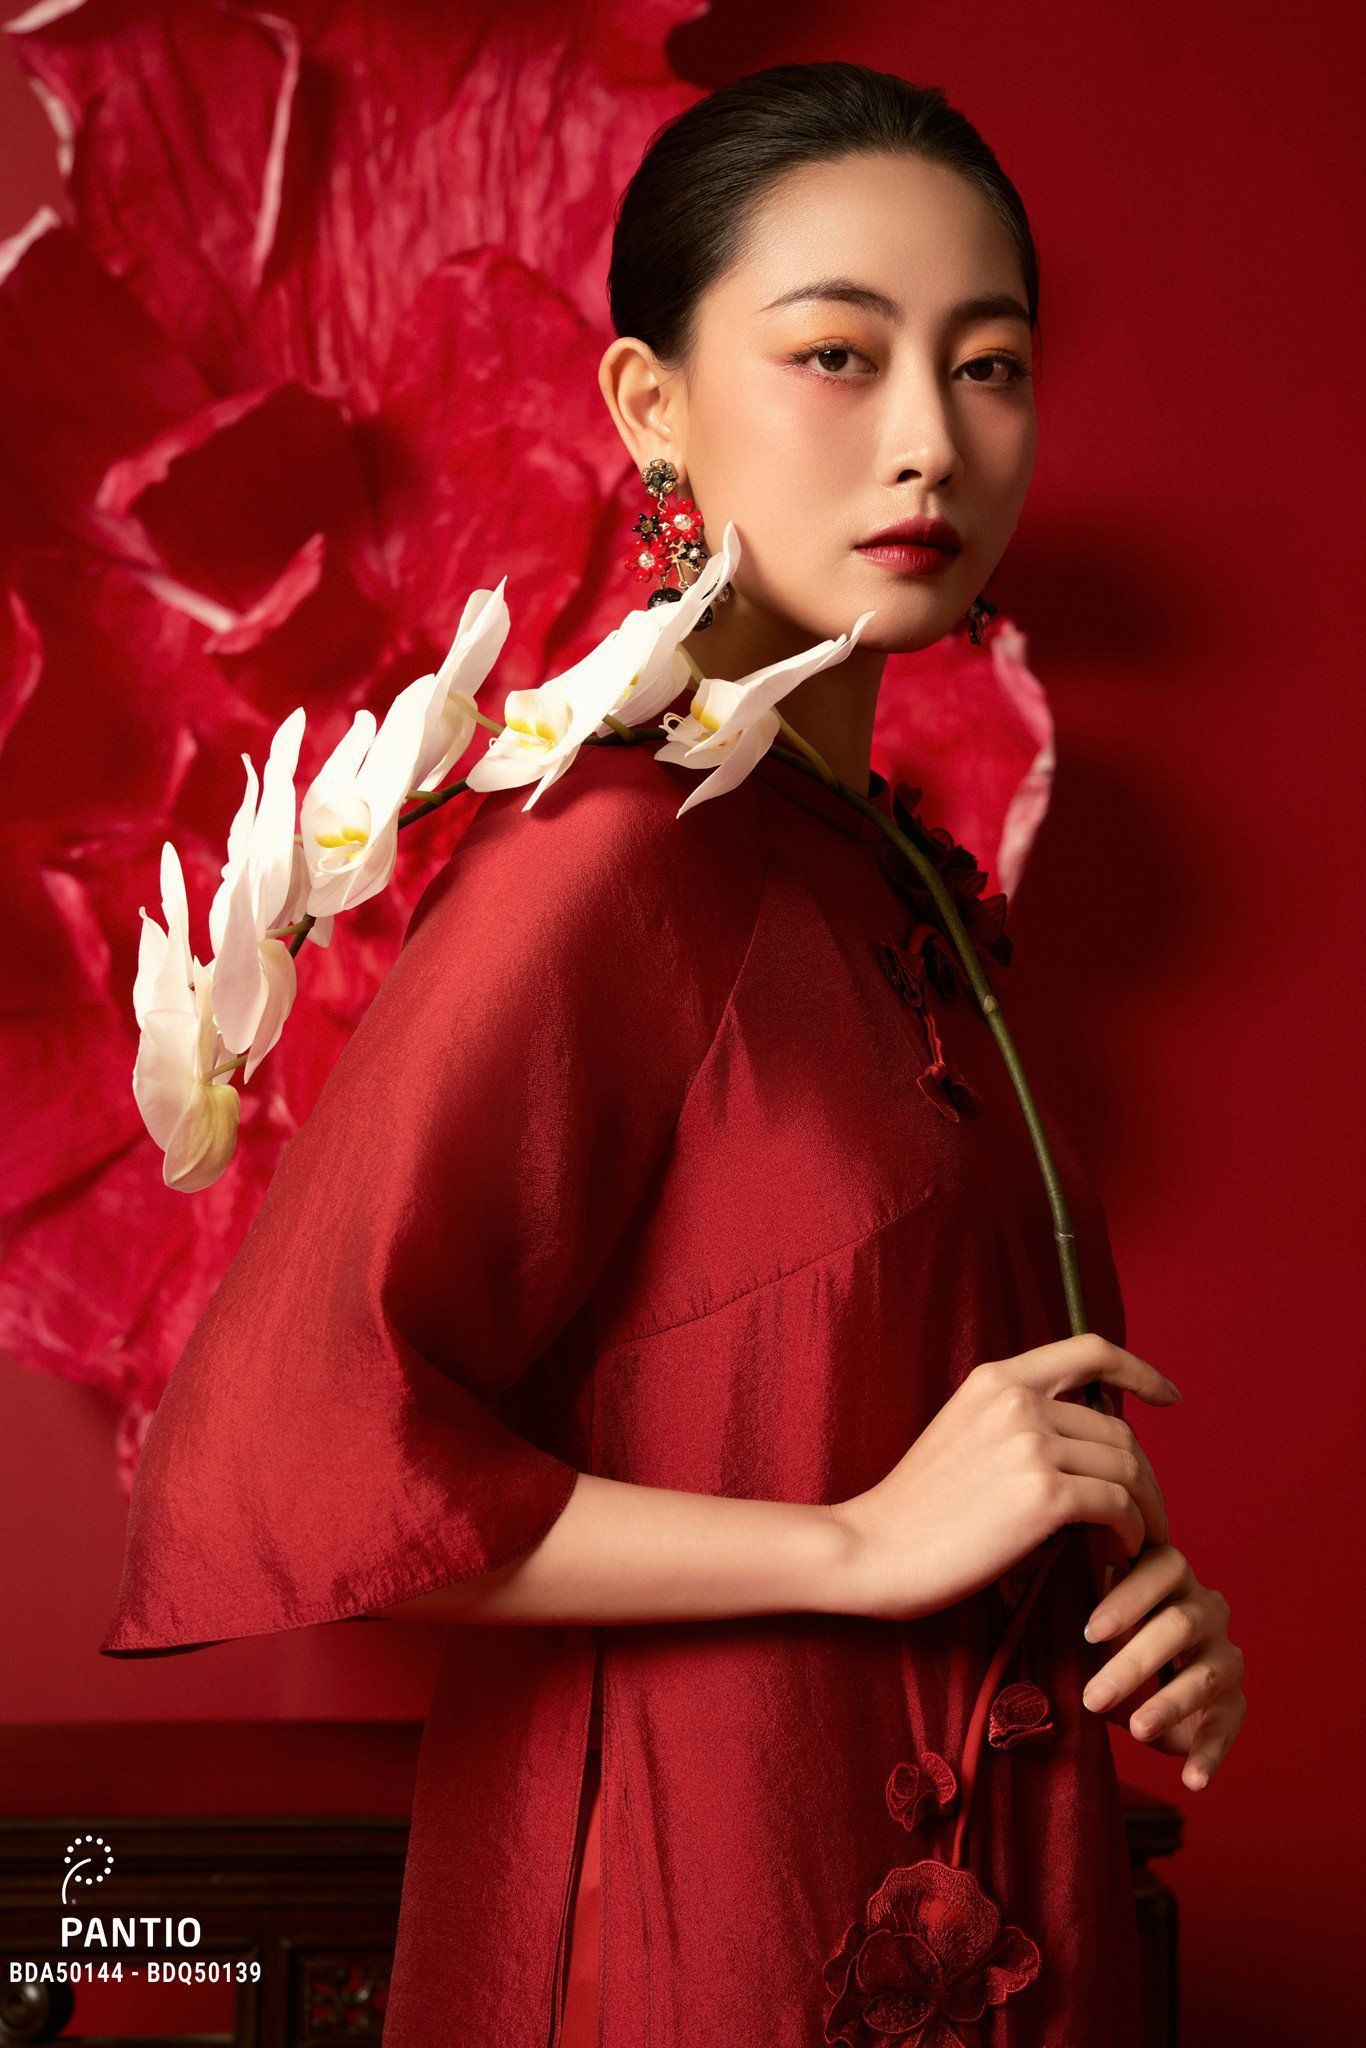 NEW COLLECTION - NGỌC ĐIỂM NGHÊNH XUÂN - BST Áo Dài Xuân Giáp Thìn 2024 cảm hứng thiết kế từ hoa phong lan Ngọc Điểm